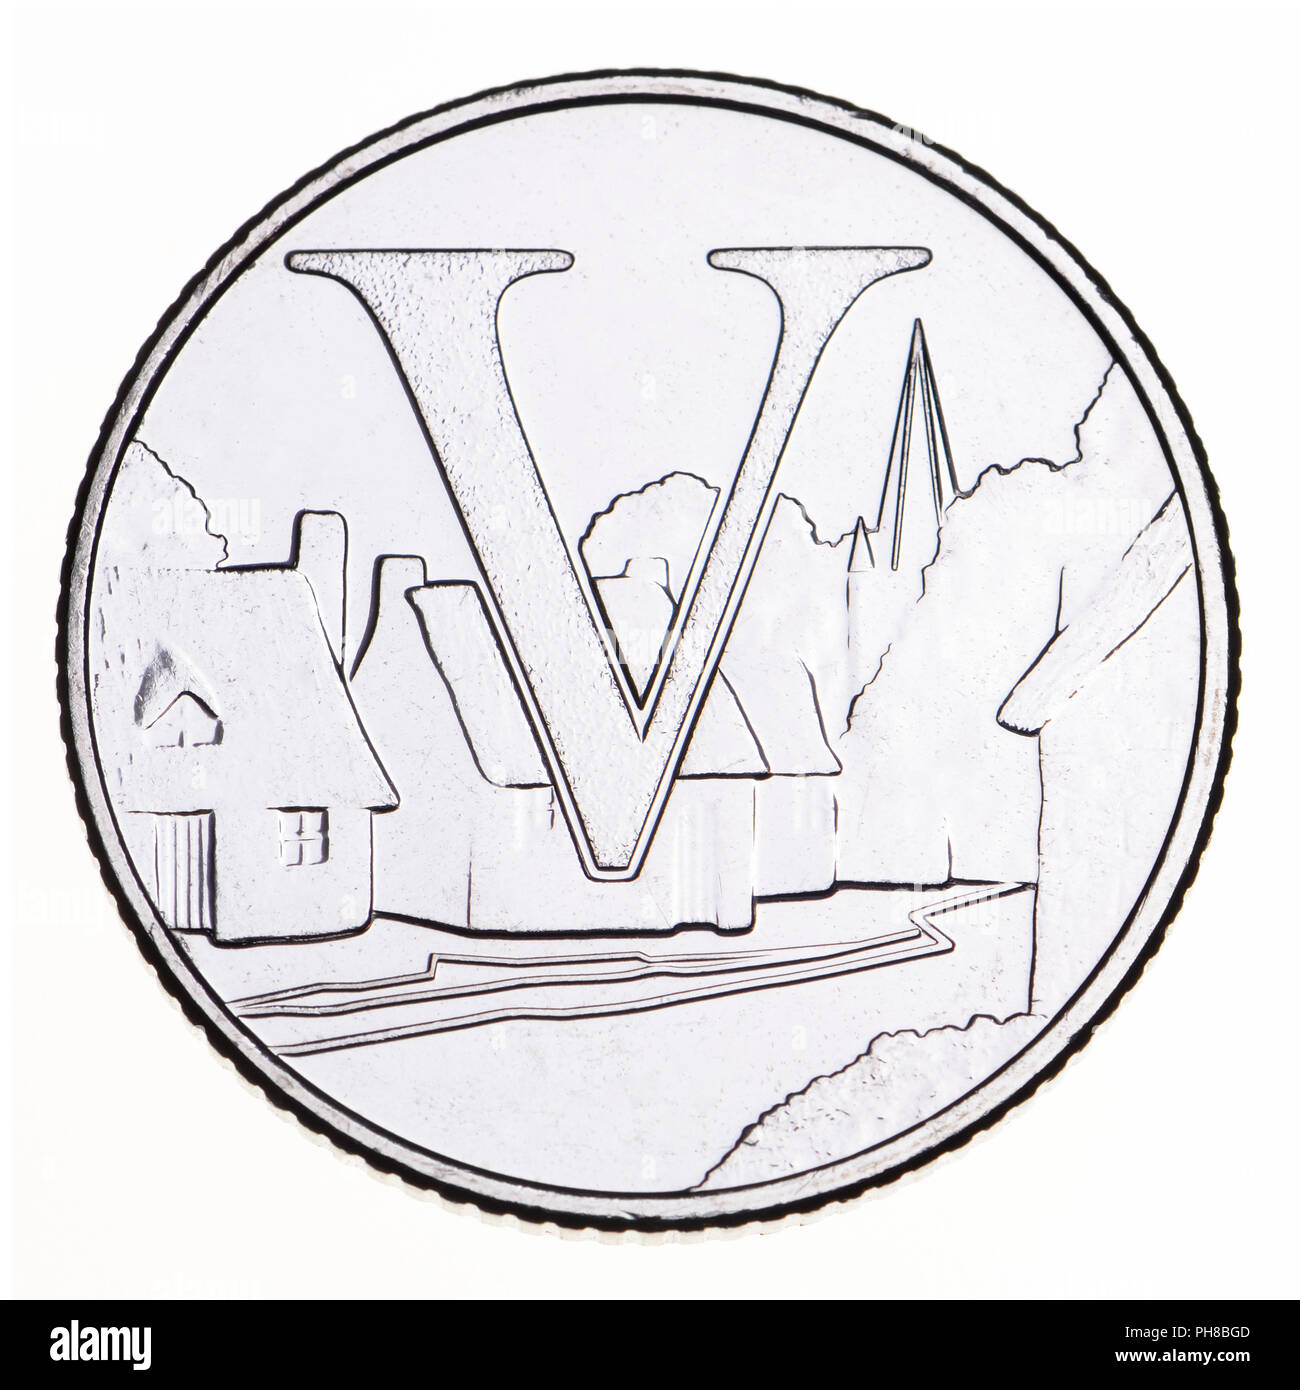 British 10p moneta (retromarcia) da 2018 alfabeti serie, celebrando britannicità. V - Villaggi Foto Stock